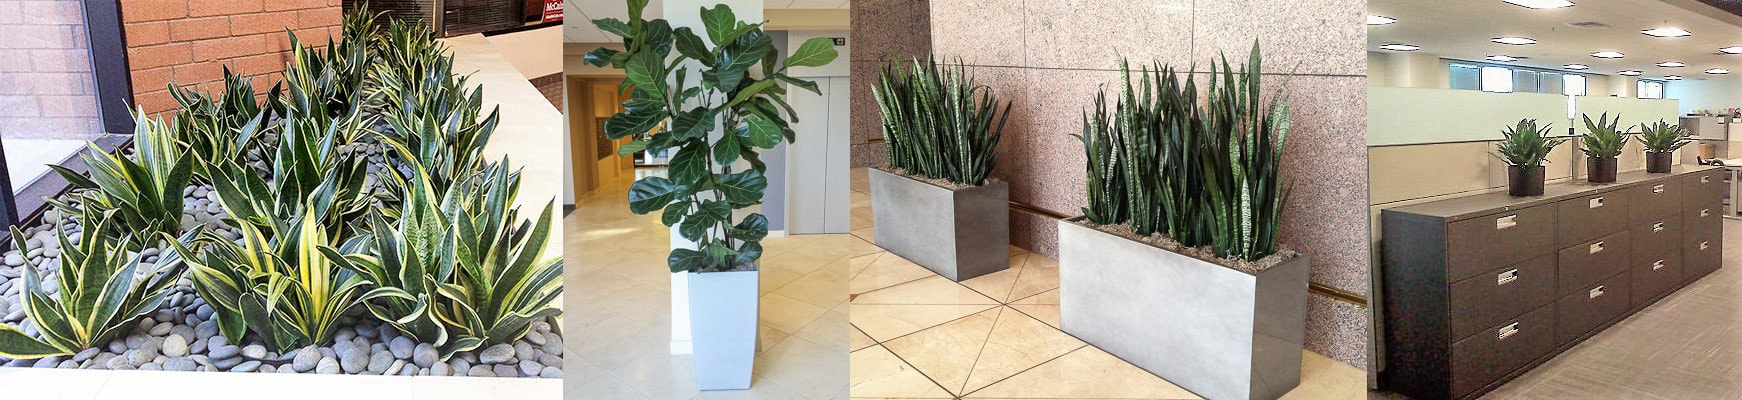 Living Plants for Offices & Lobbies Phoenix area